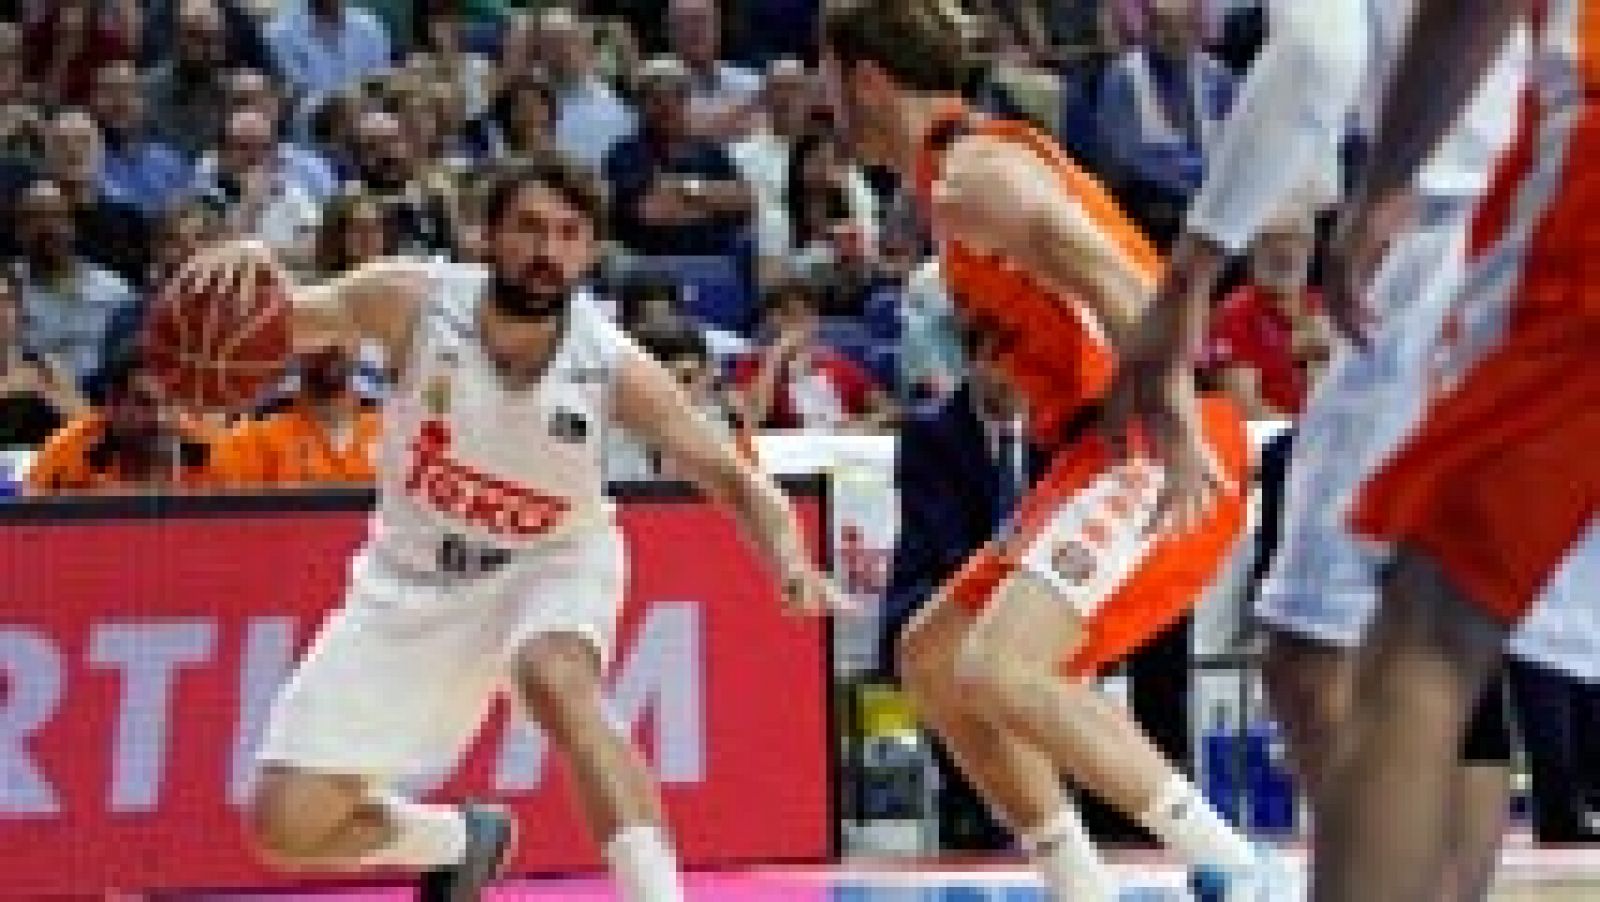 Dos triples consecutivos de Sergio Llull, en los últimos minutos de un partido muy disputado, le enseñaron al Real Madrid el camino de la victoria, que consiguió por 97-88 ante el Valencia Basket, y que le sitúa a un tiro de piedra de la final de la Liga Endesa.